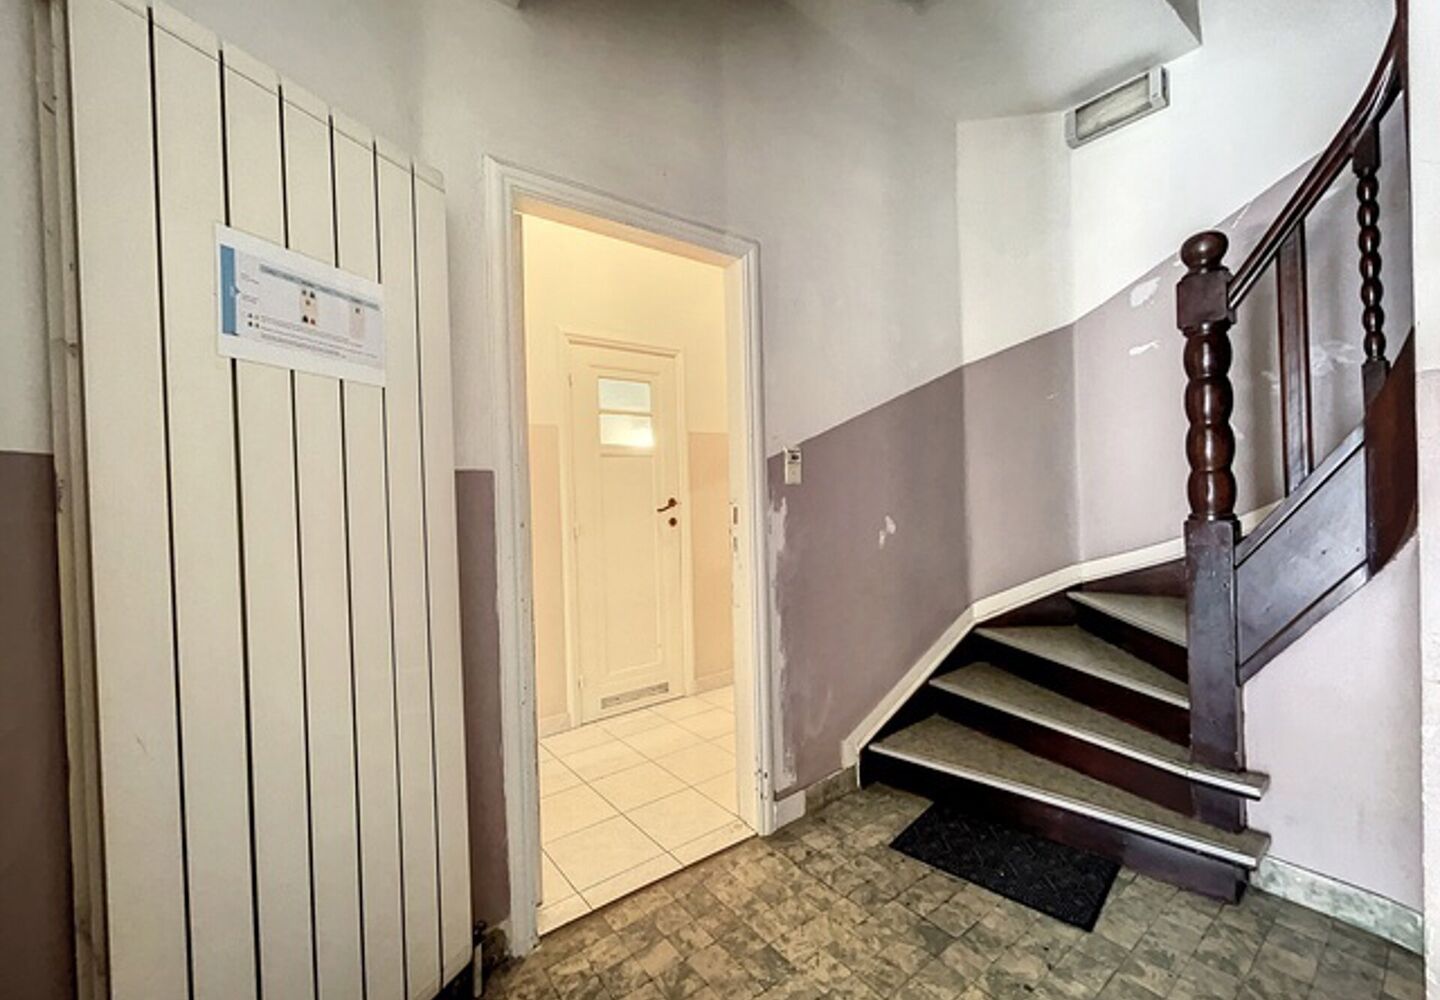 Offices for rent in Schaerbeek